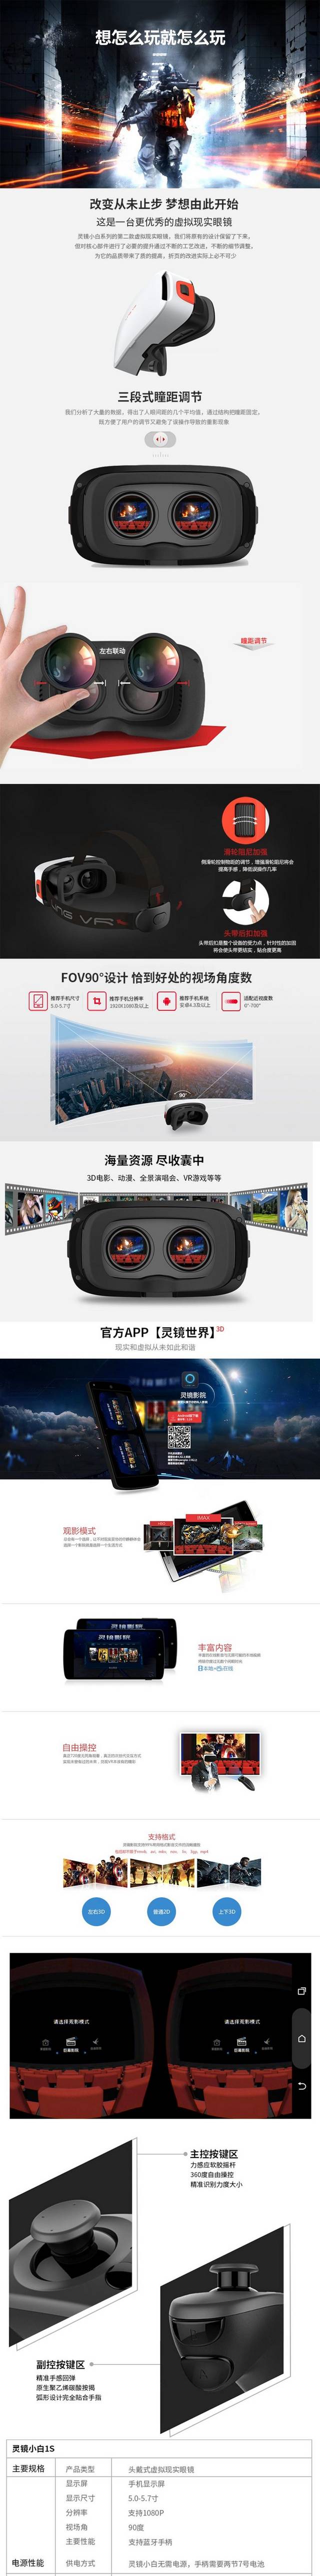 VR眼镜淘宝详情页黑科技清爽风格